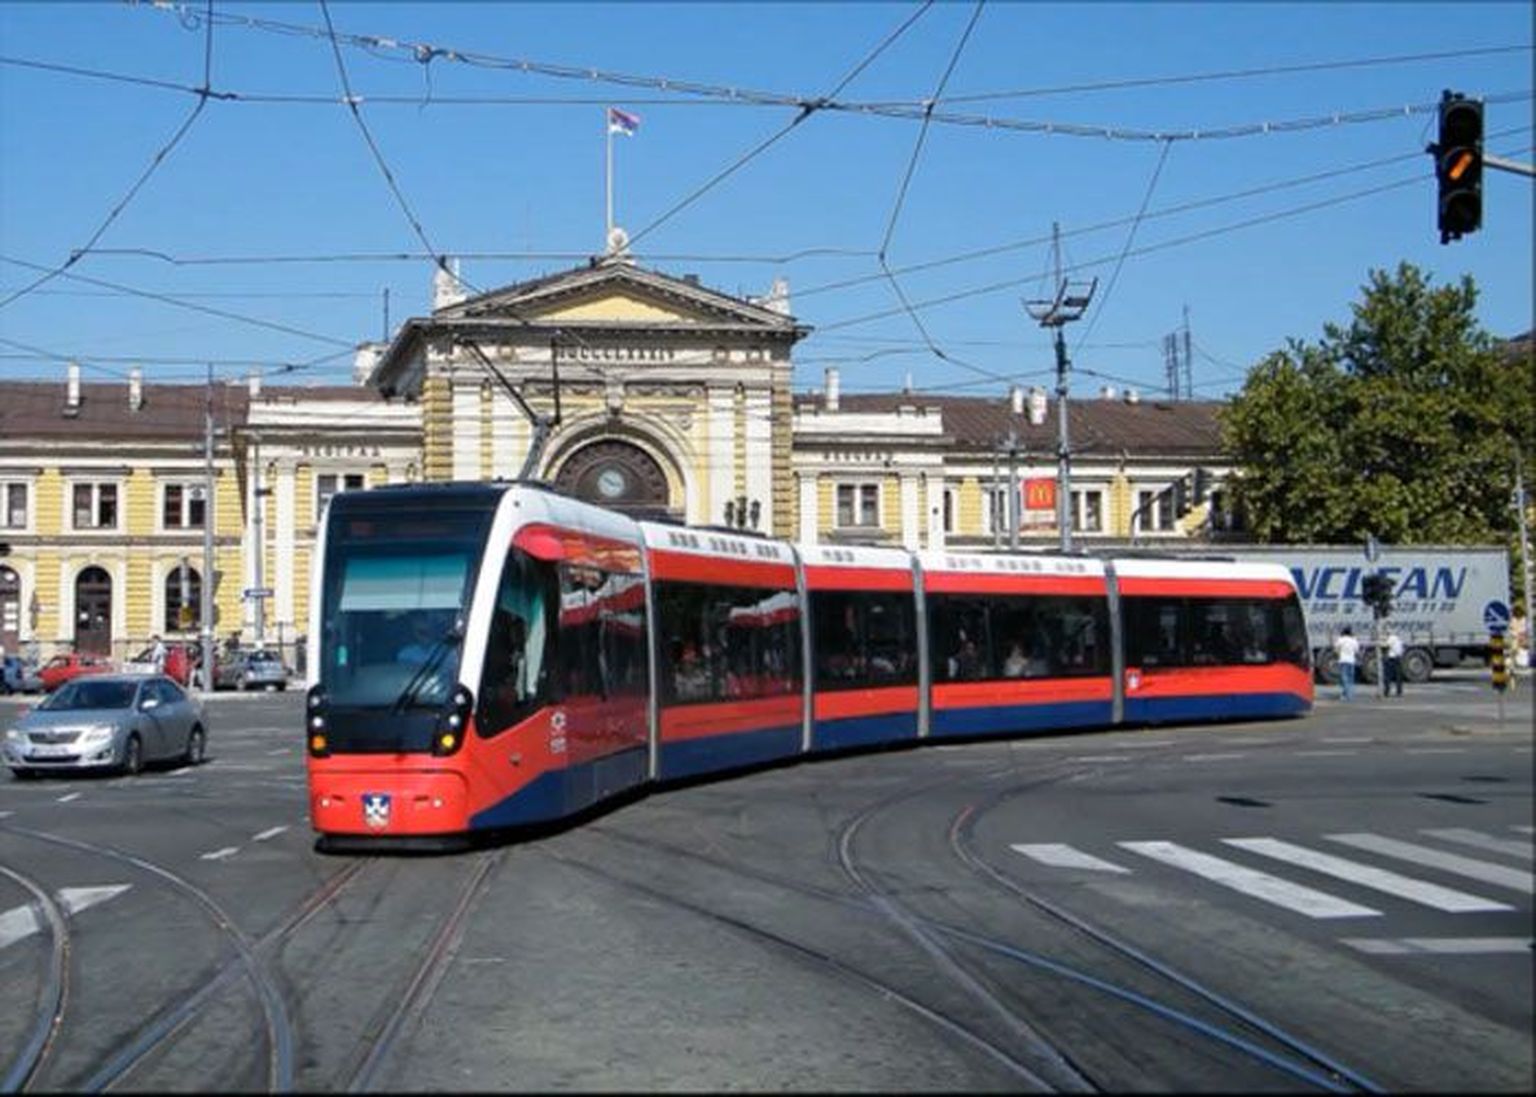 Belgradis sõitev CAFi tramm on tõenäoliselt ligilähedane neile trammidele, mis hakkavad liikuma Tallinnas.